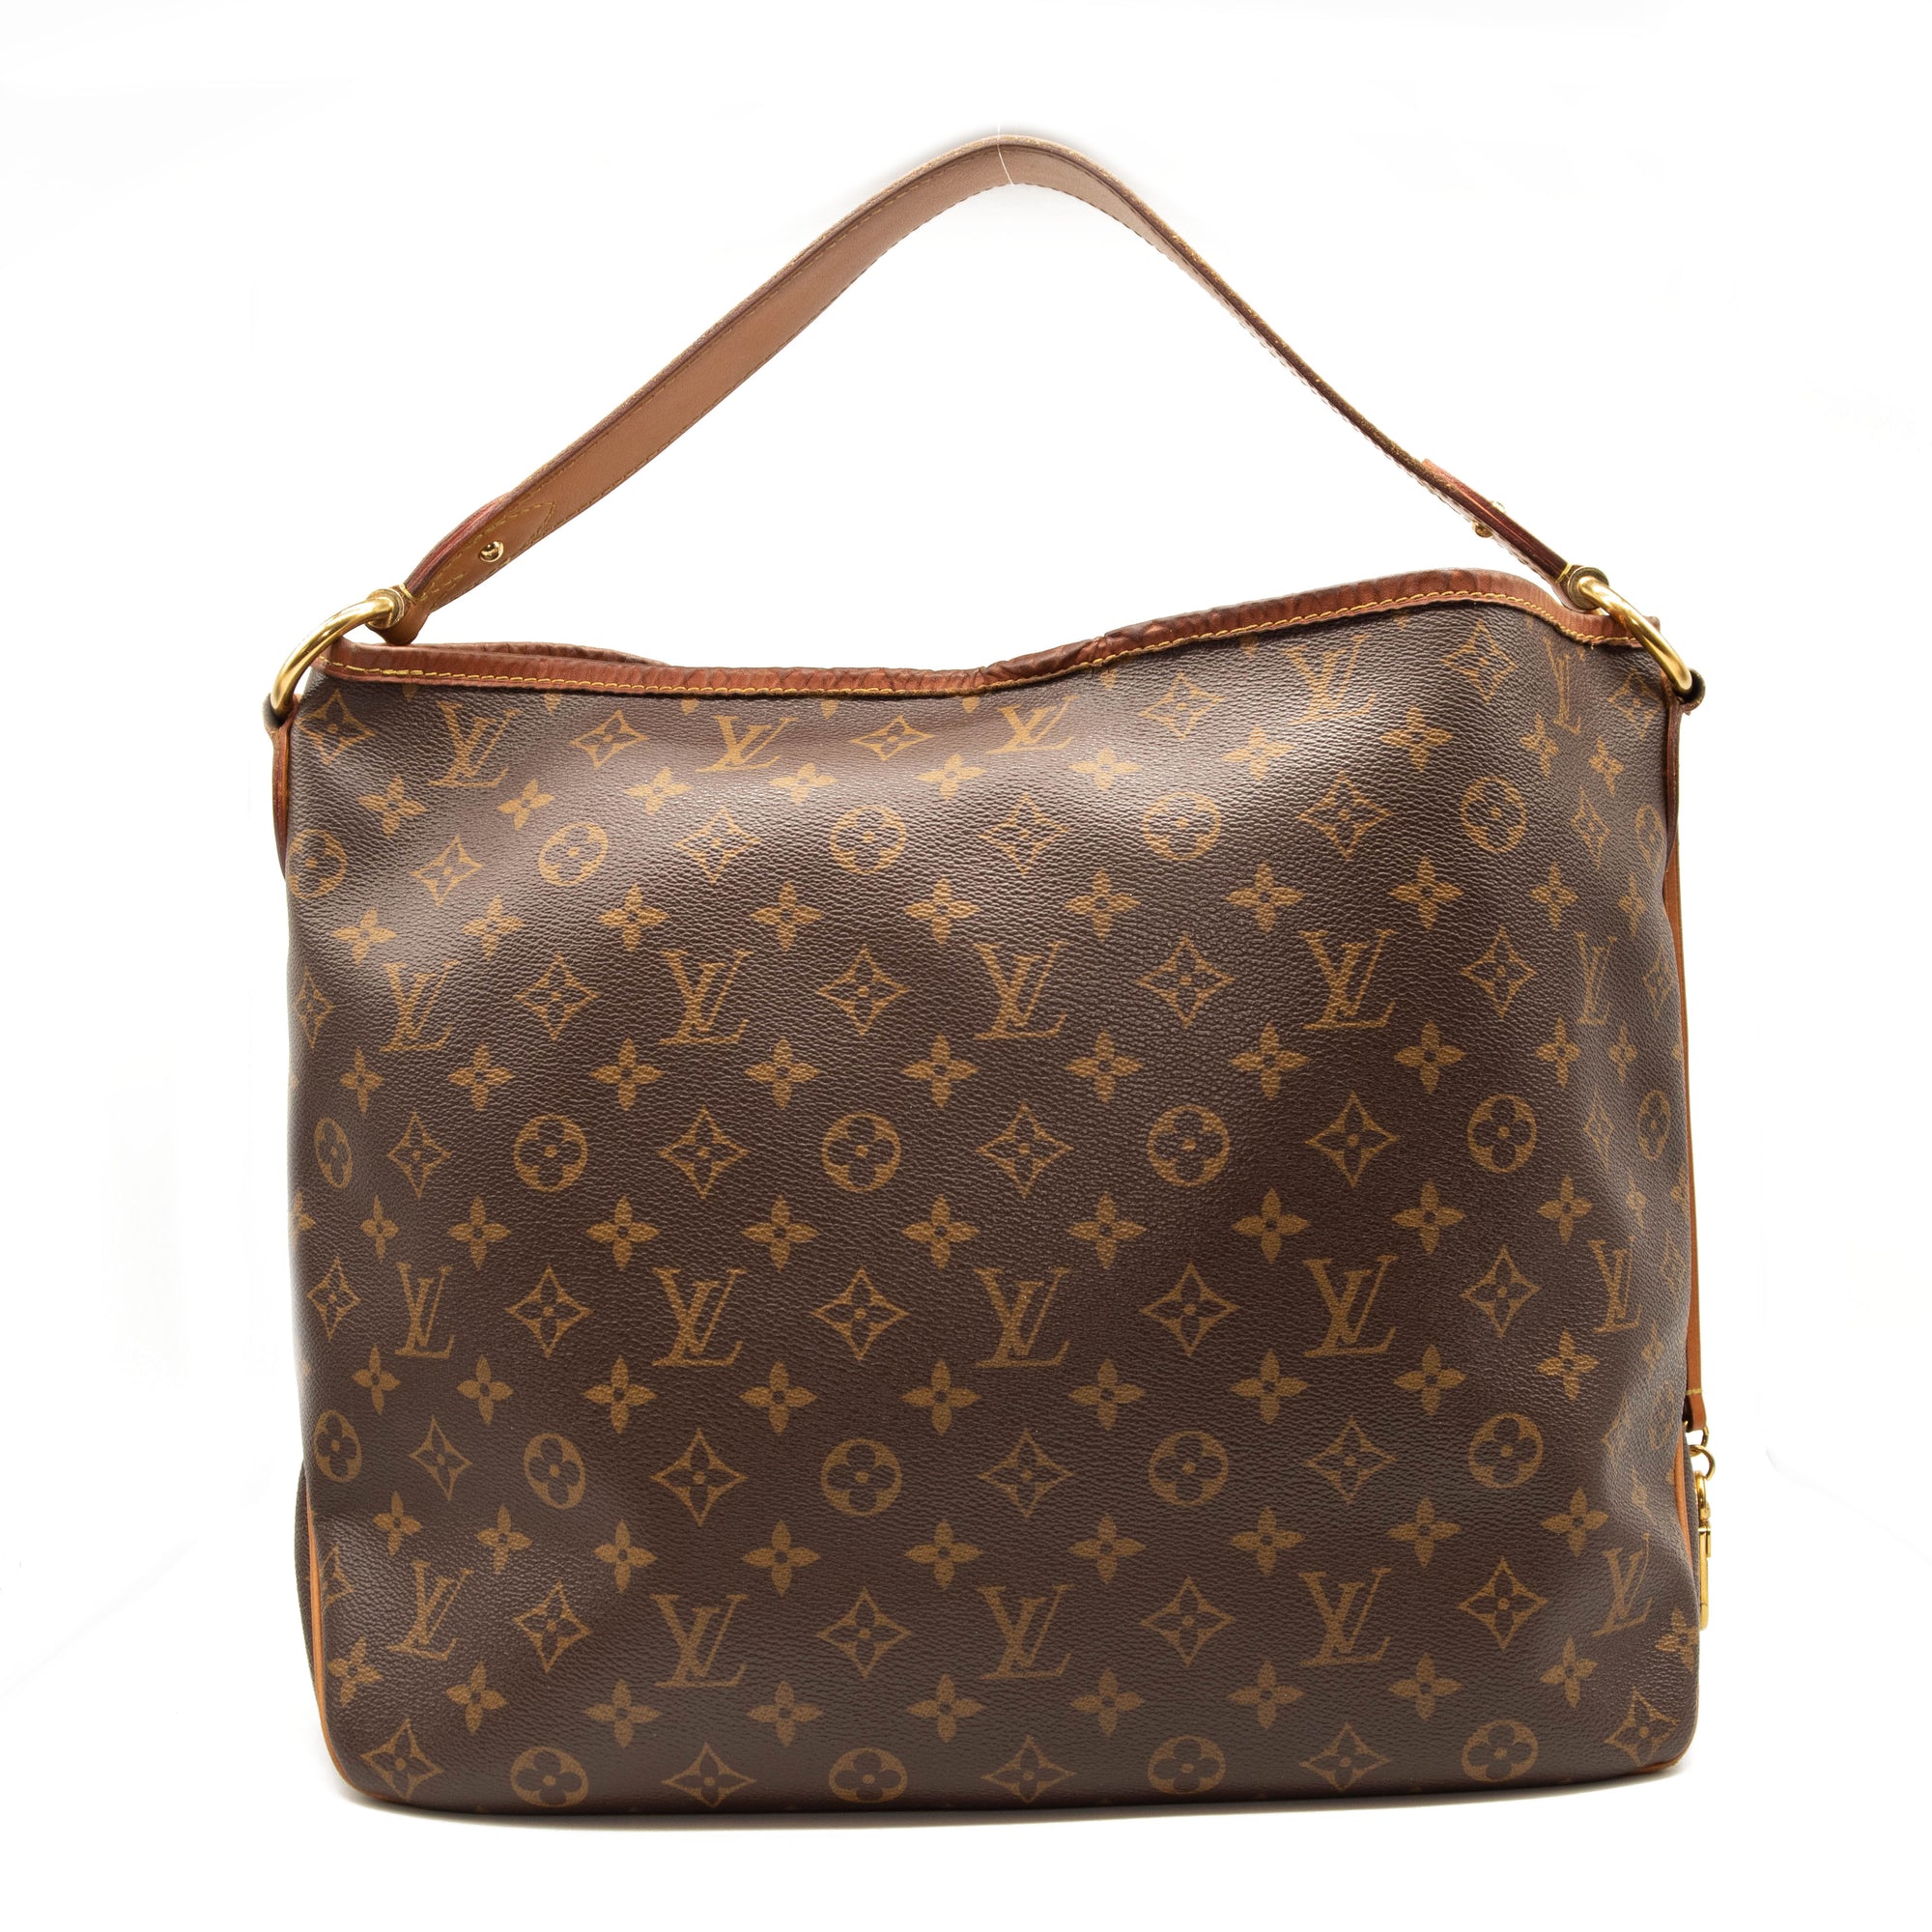 Pre-Owned LOUIS VUITTON Louis Vuitton Delightful PM Shoulder Bag